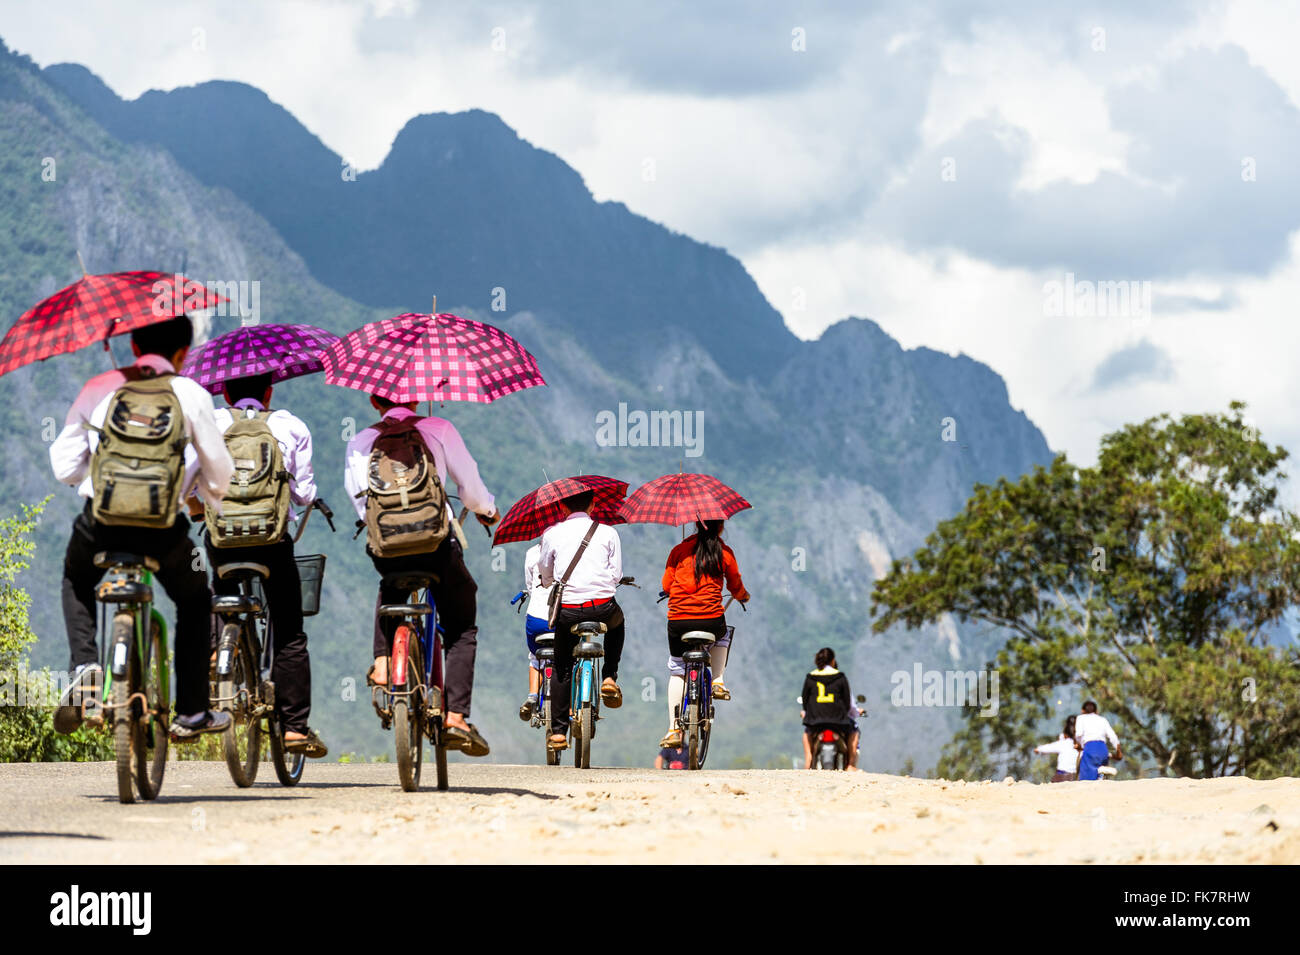 Asien. Süd-Ost-Asien. Laos. Provinz von Vang Vieng. Kinder verlassen die Schule mit dem Fahrrad. Stockfoto